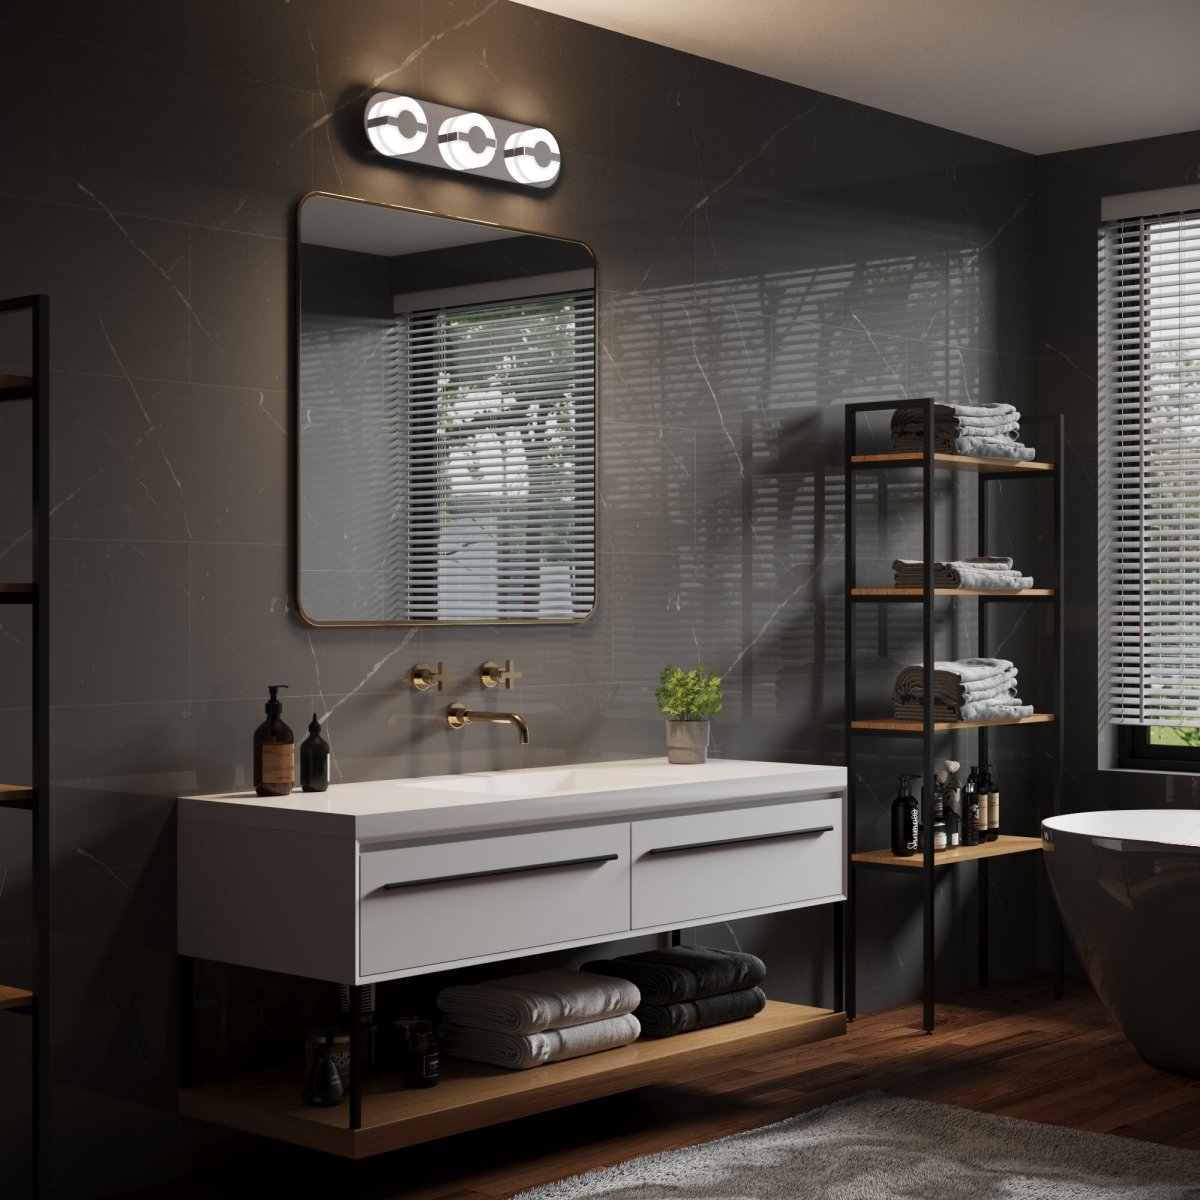 ExBrite 22.8" Chromed 3-Lights LED Vanity Light for Modern Bathrooms